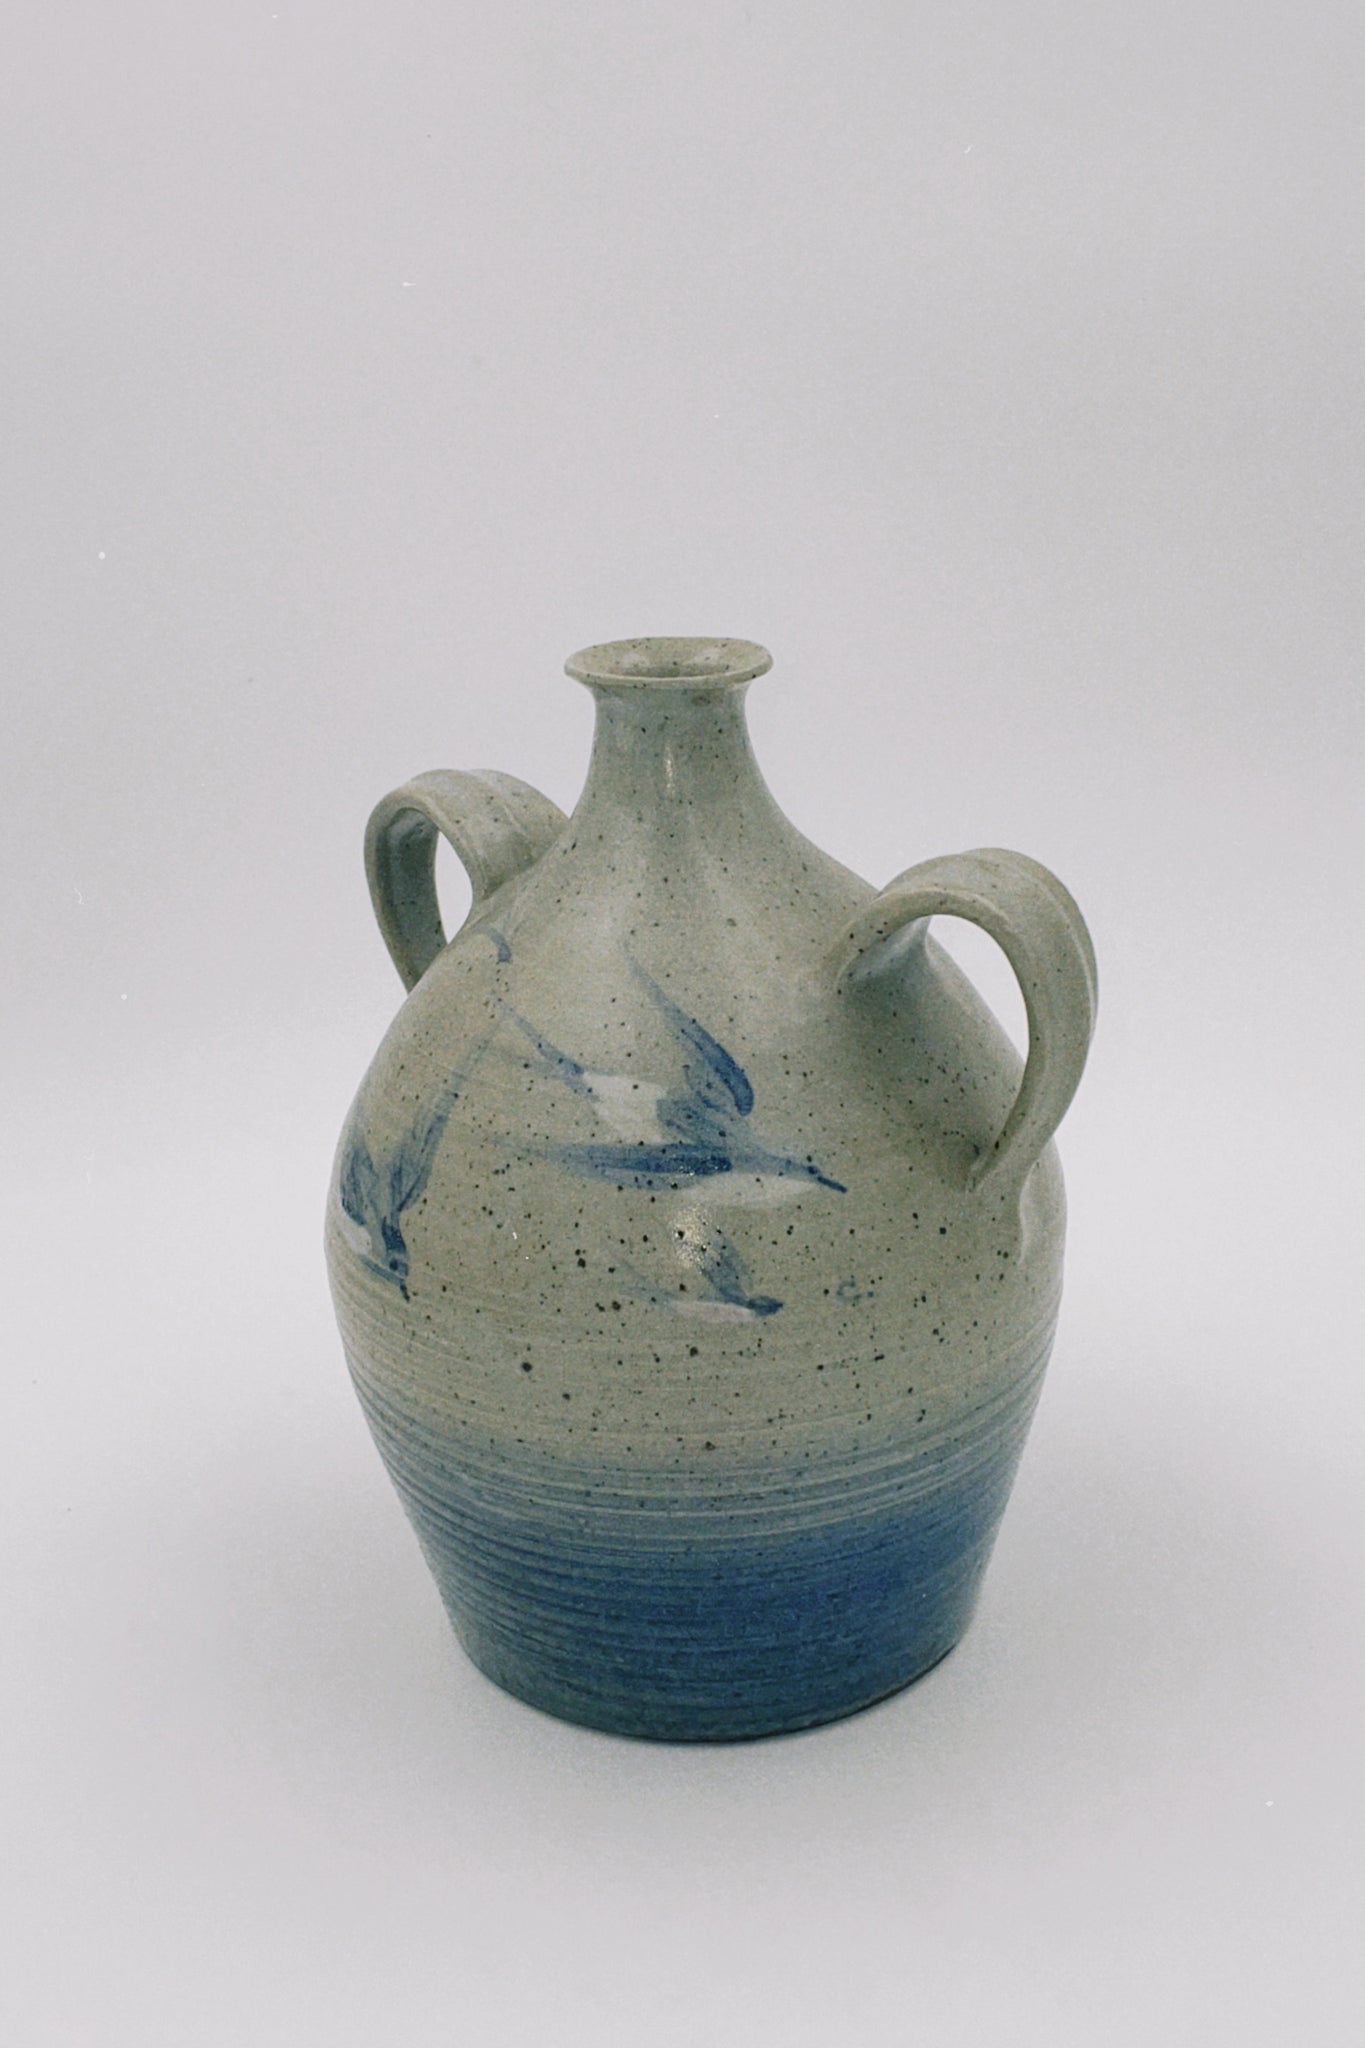 Amphora Grey and Blue Ceramic Vase